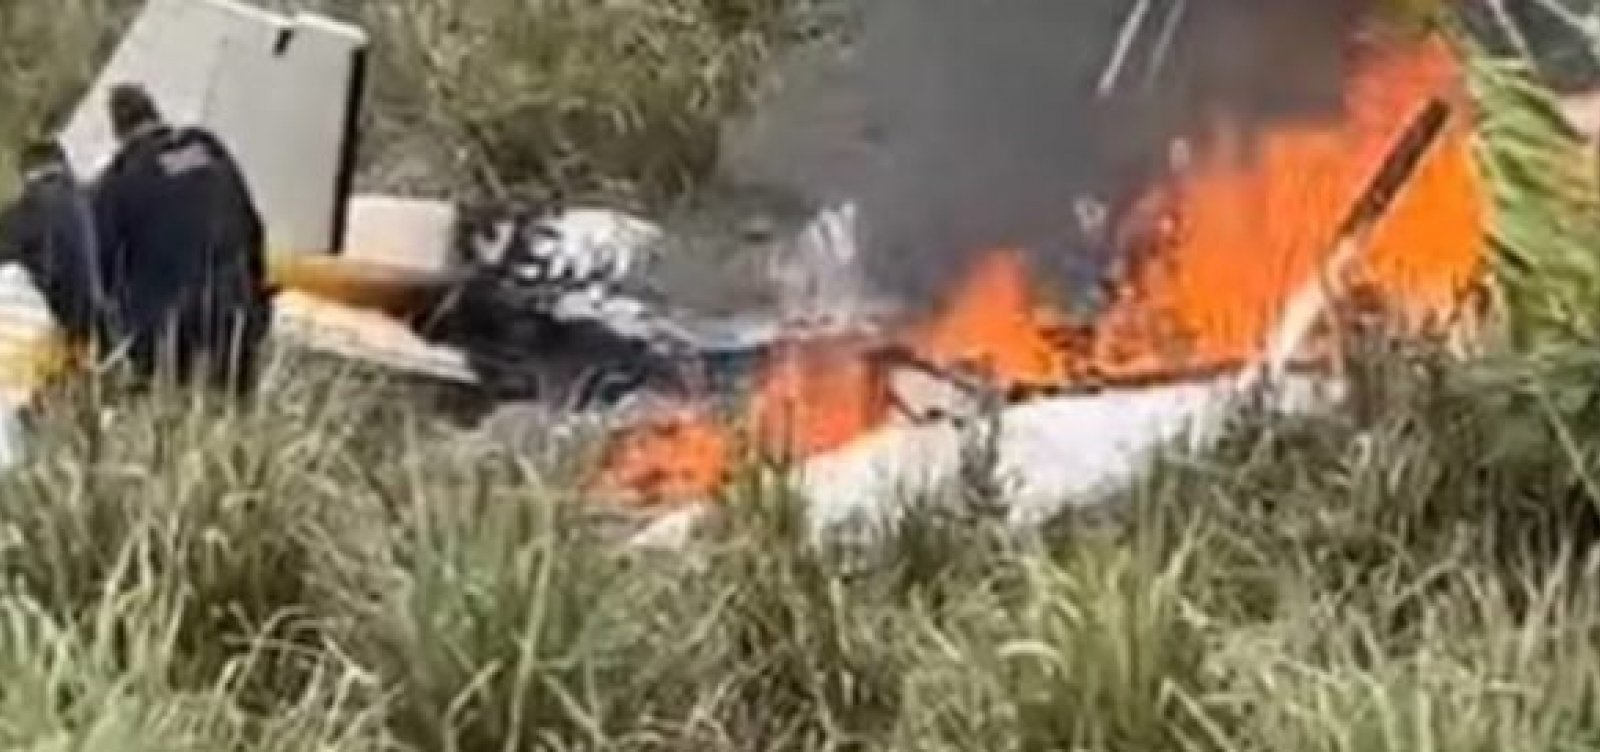 Avião de pequeno porte cai no interior do Acre e deixa 1 morto e 3 feridos